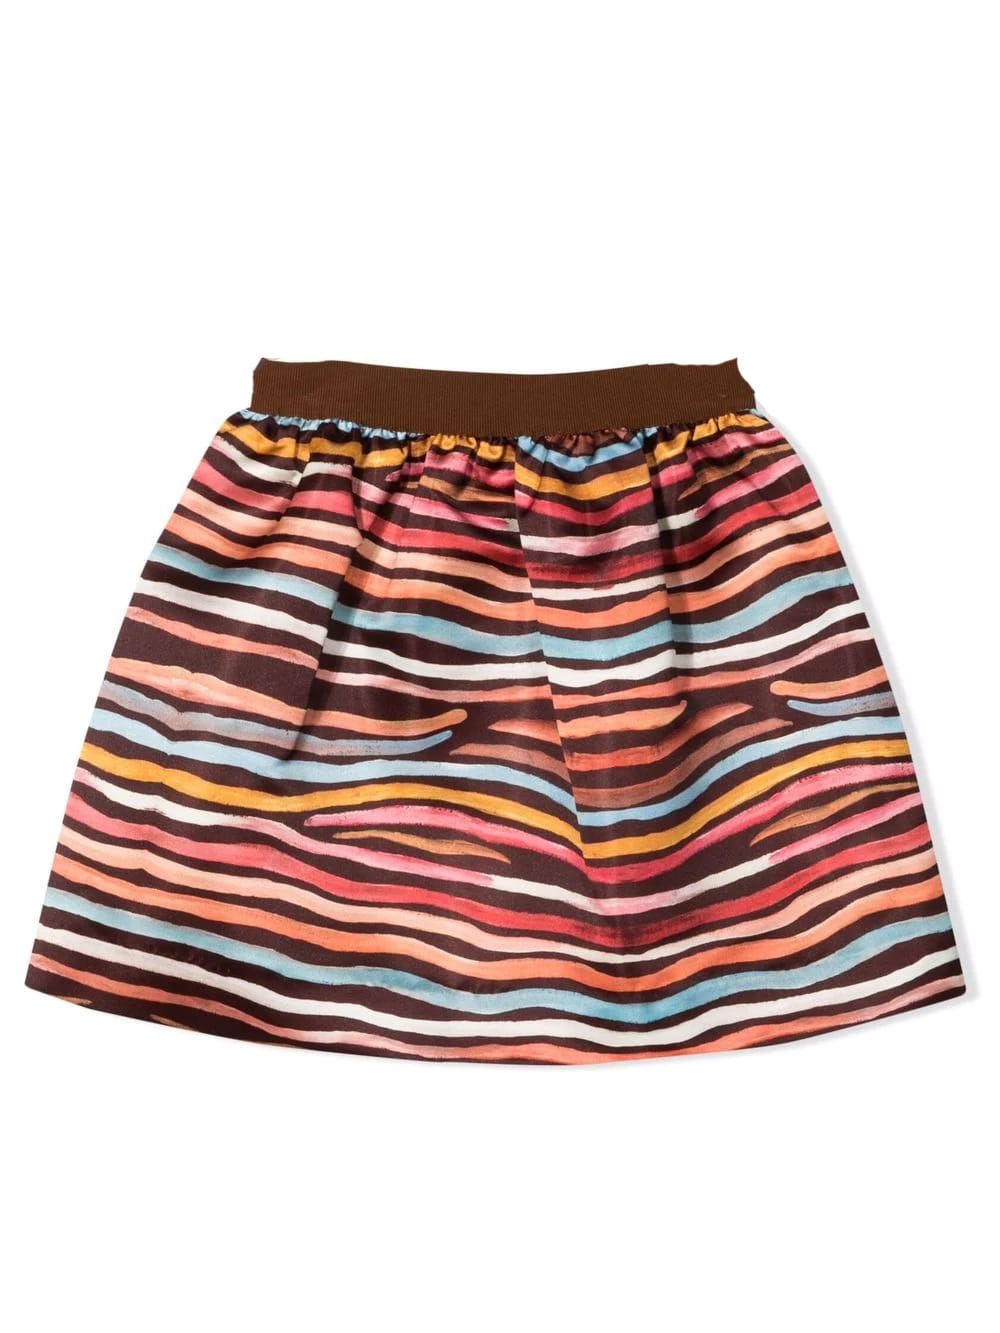 MiMiSol Striped Skirt